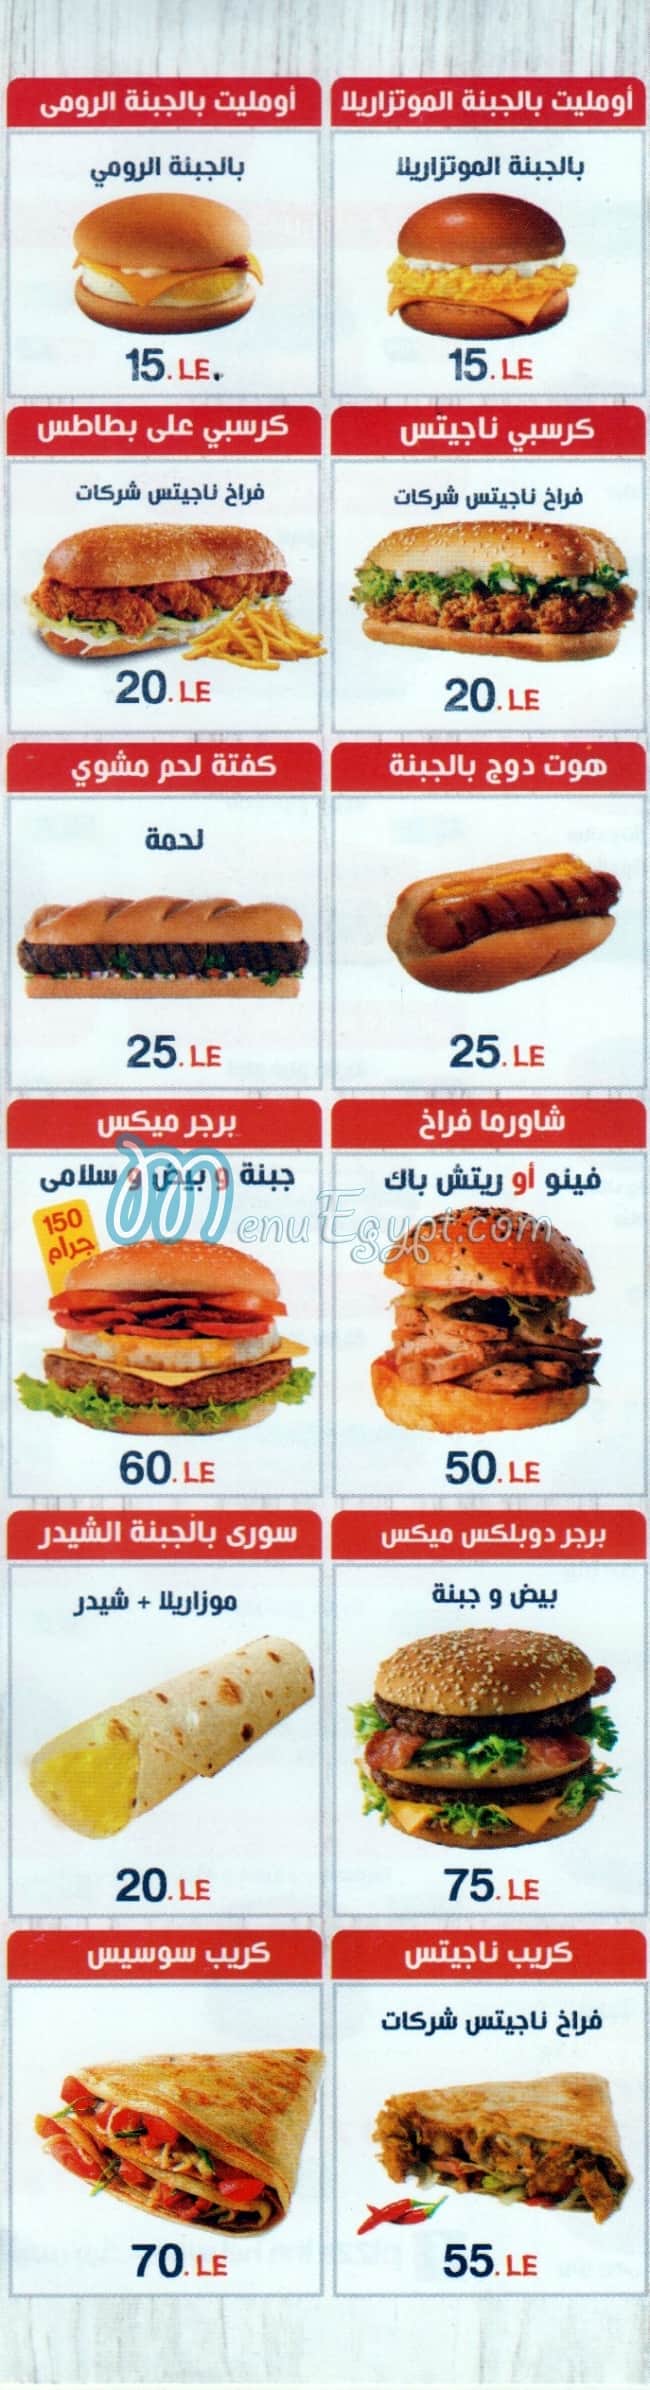 أسعار بيتزا إن مصر